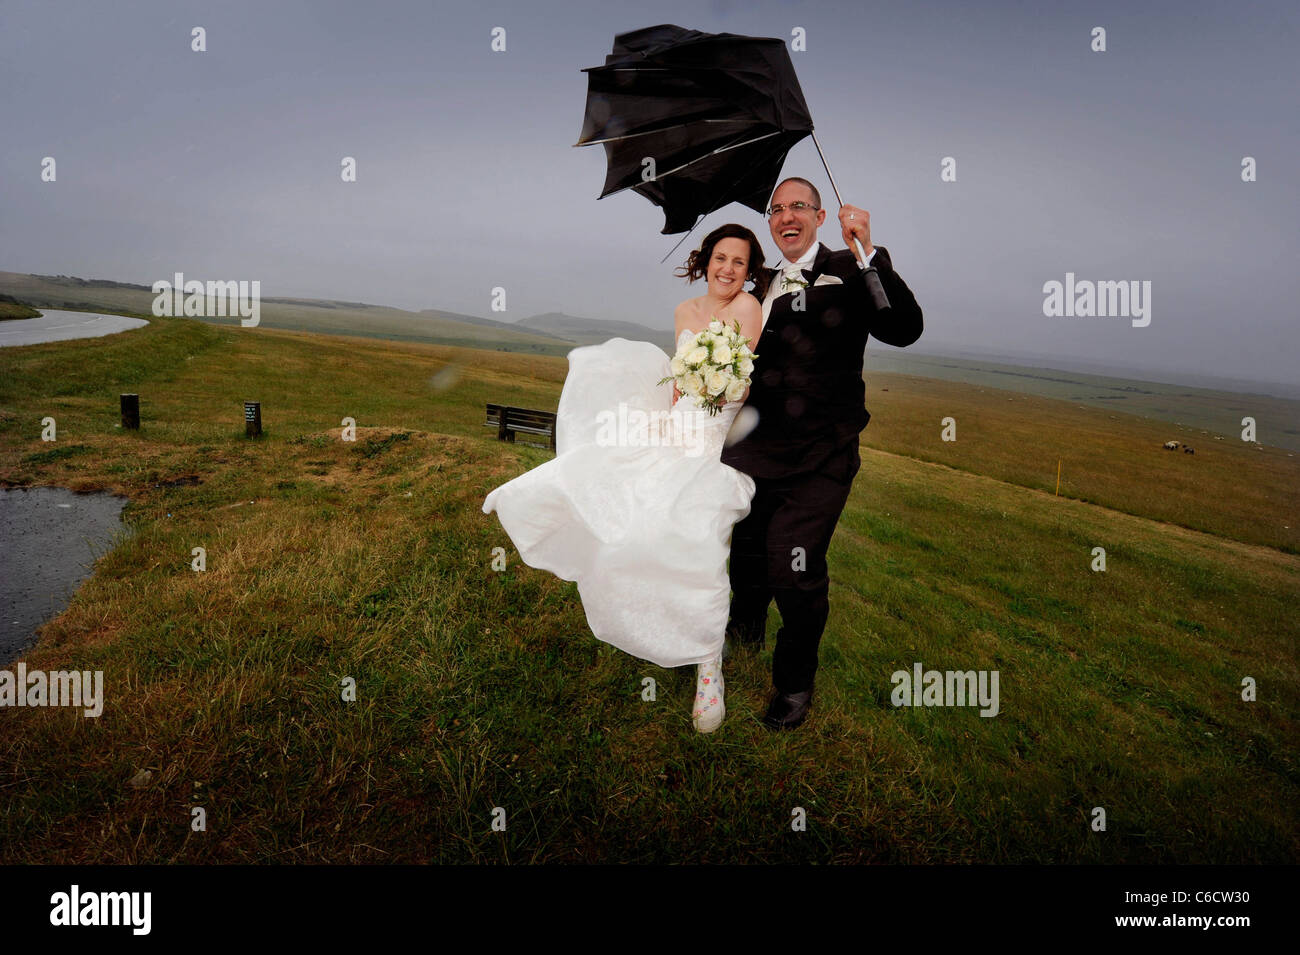 Der strömende Regen dämpft die Hochzeit des glücklichen Paares Sandra und Scott nicht, da sie bei starkem Wind auf Beachy Head posieren. Stockfoto